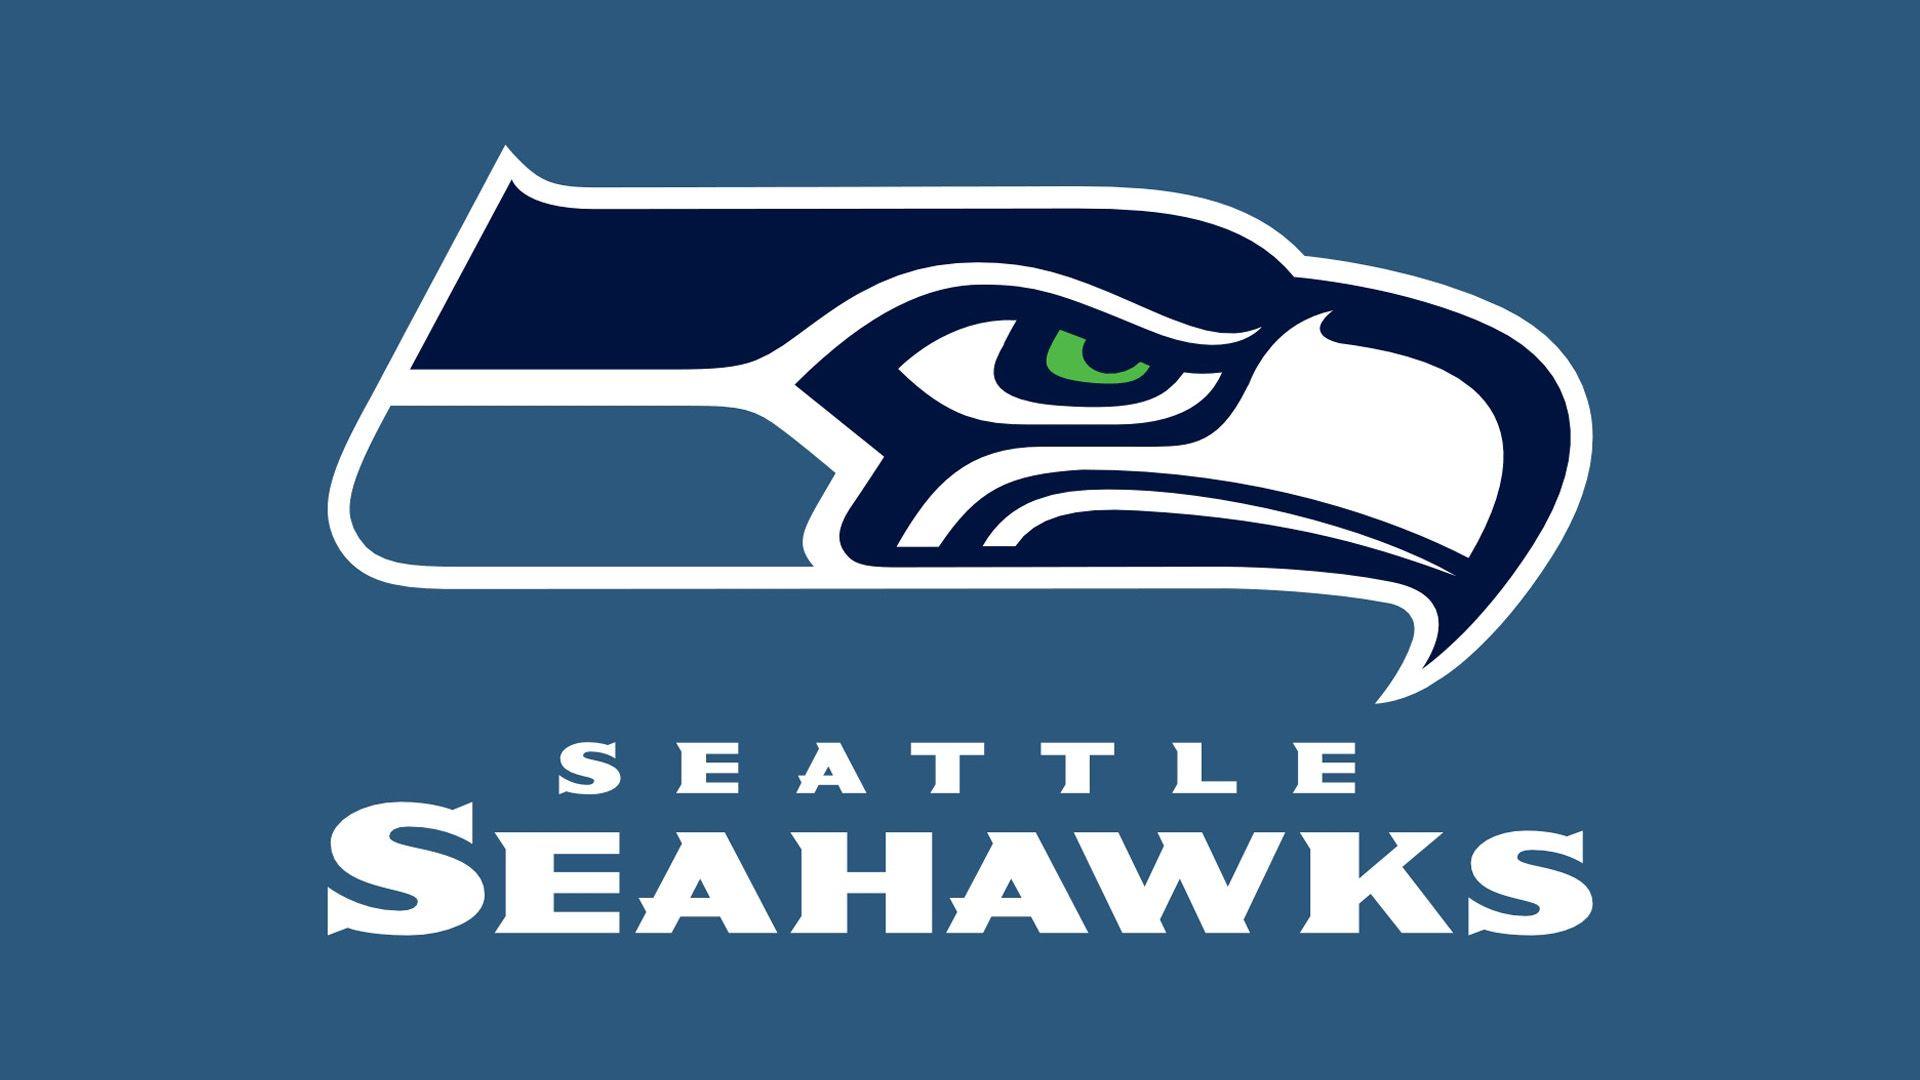 NFL Team Seattle Seahawks Wallpaper 63511 Wallpaper. Cool